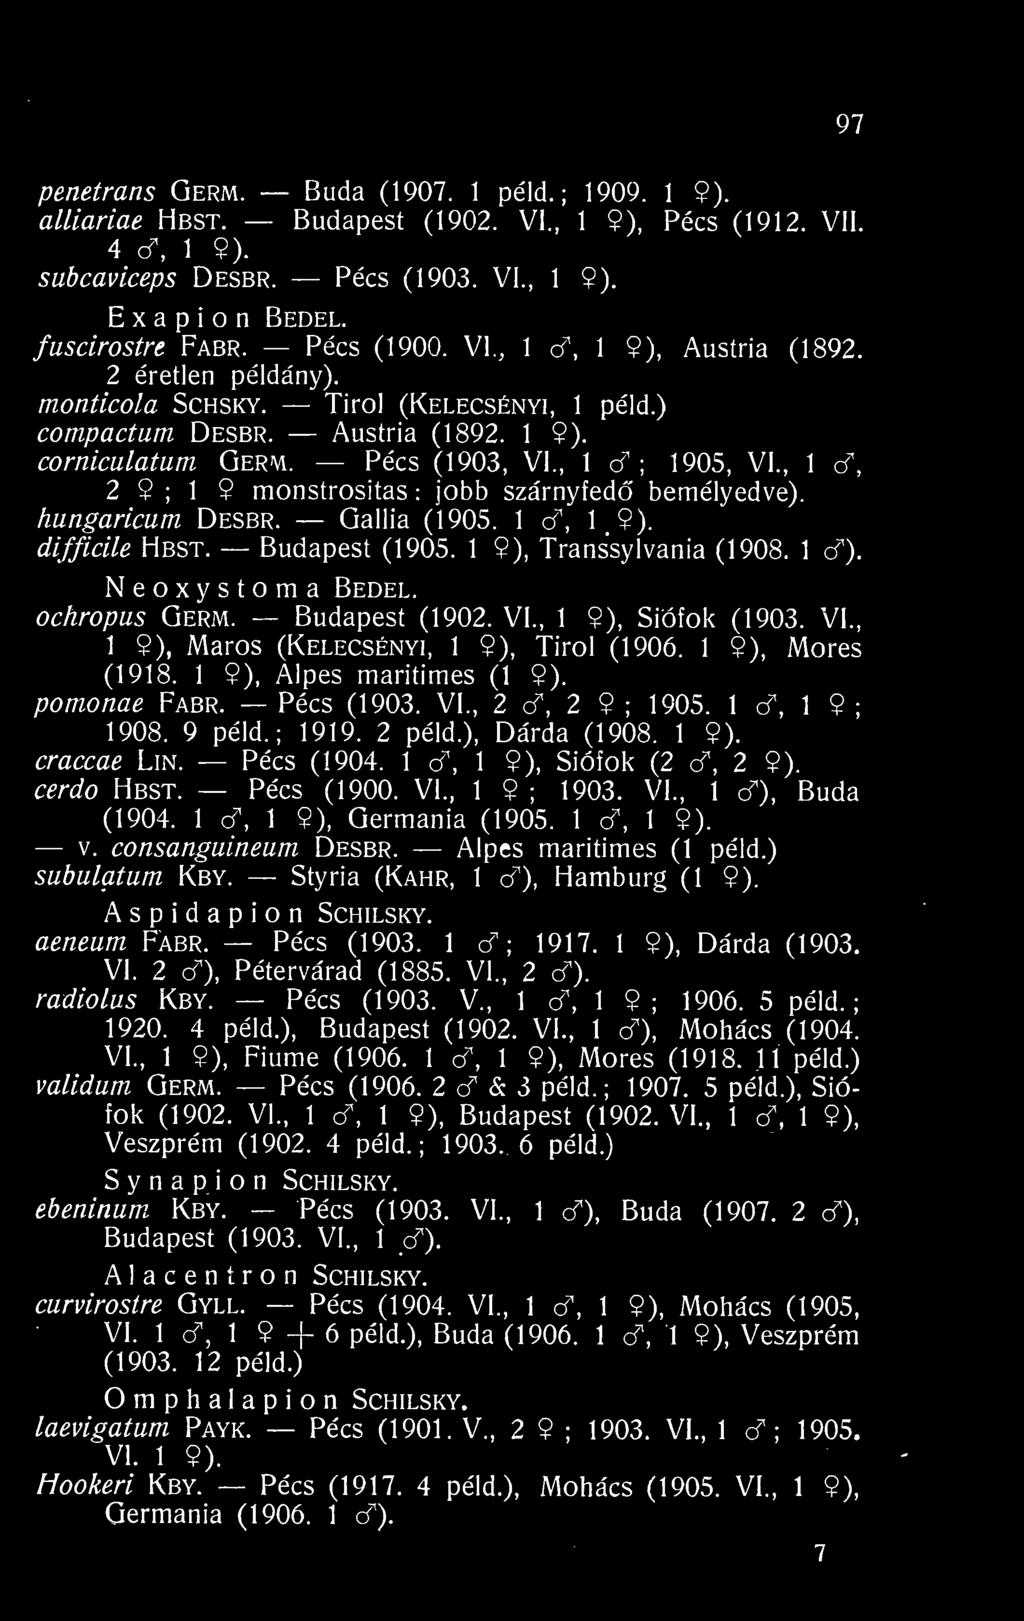 , 1 o^ ; 1905, VI., 1 c^, 2 9 ; 1 9 monstrositas : jobb szárnyfed bemélyedve). hungaricum Desbr. Gallia (1905. 1 ct, 1 9). difficile Hbst. Budapest (1905. 1 9), Transsylvania (1908. 1 cf).